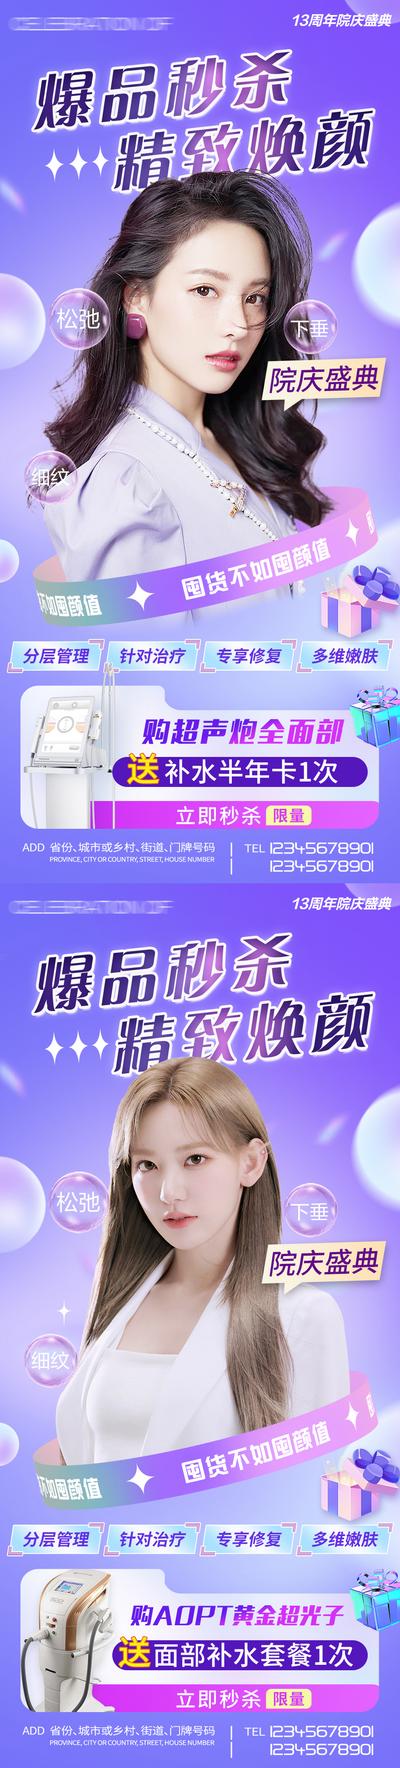 南门网 广告 海报 背景板 人物 电商 长图 主画面 活动 促销